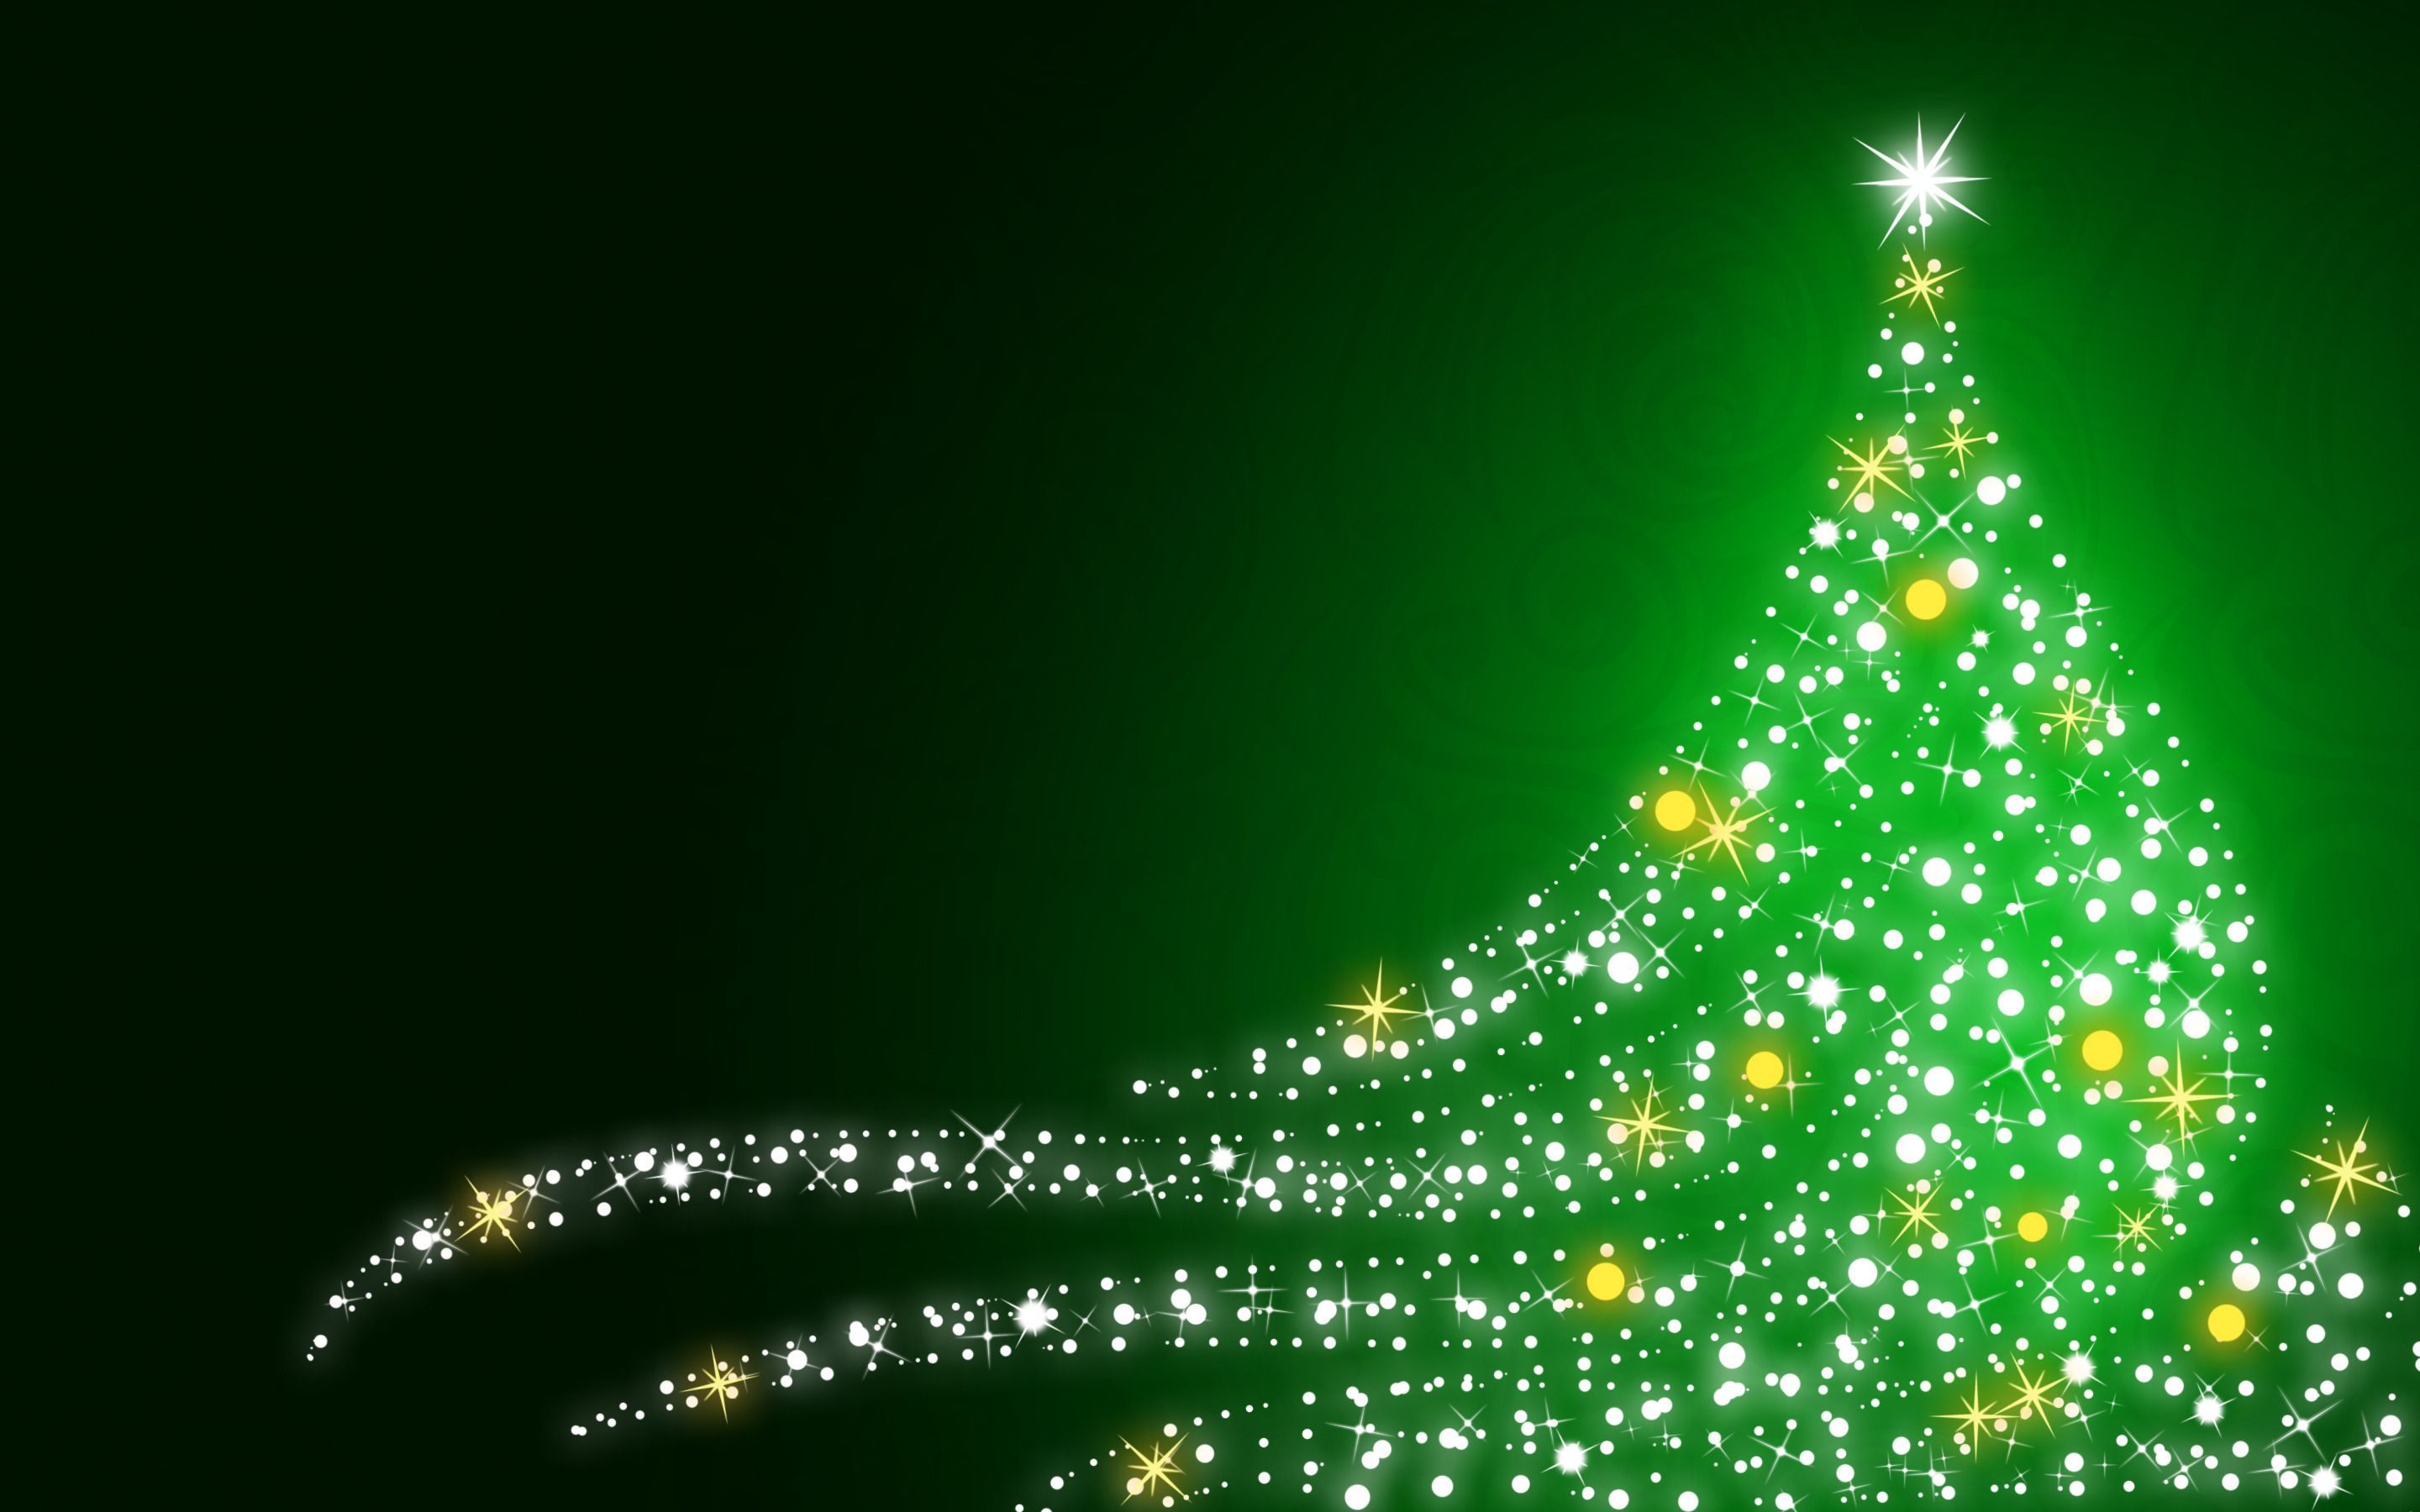 Không gian nhà bạn sẽ trở nên hoàn hảo hơn trong mùa Giáng Sinh với bức hình nền Xmas tree background xanh mát này. Với màu sắc tươi sáng và nét đẹp tinh tế, nó sẽ làm cho bất kỳ phòng khách hay phòng ngủ nào của bạn trở nên lãng mạn và ấm áp hơn. Hãy xem hình ảnh để cảm nhận sự đẹp đẽ của nó nhé!